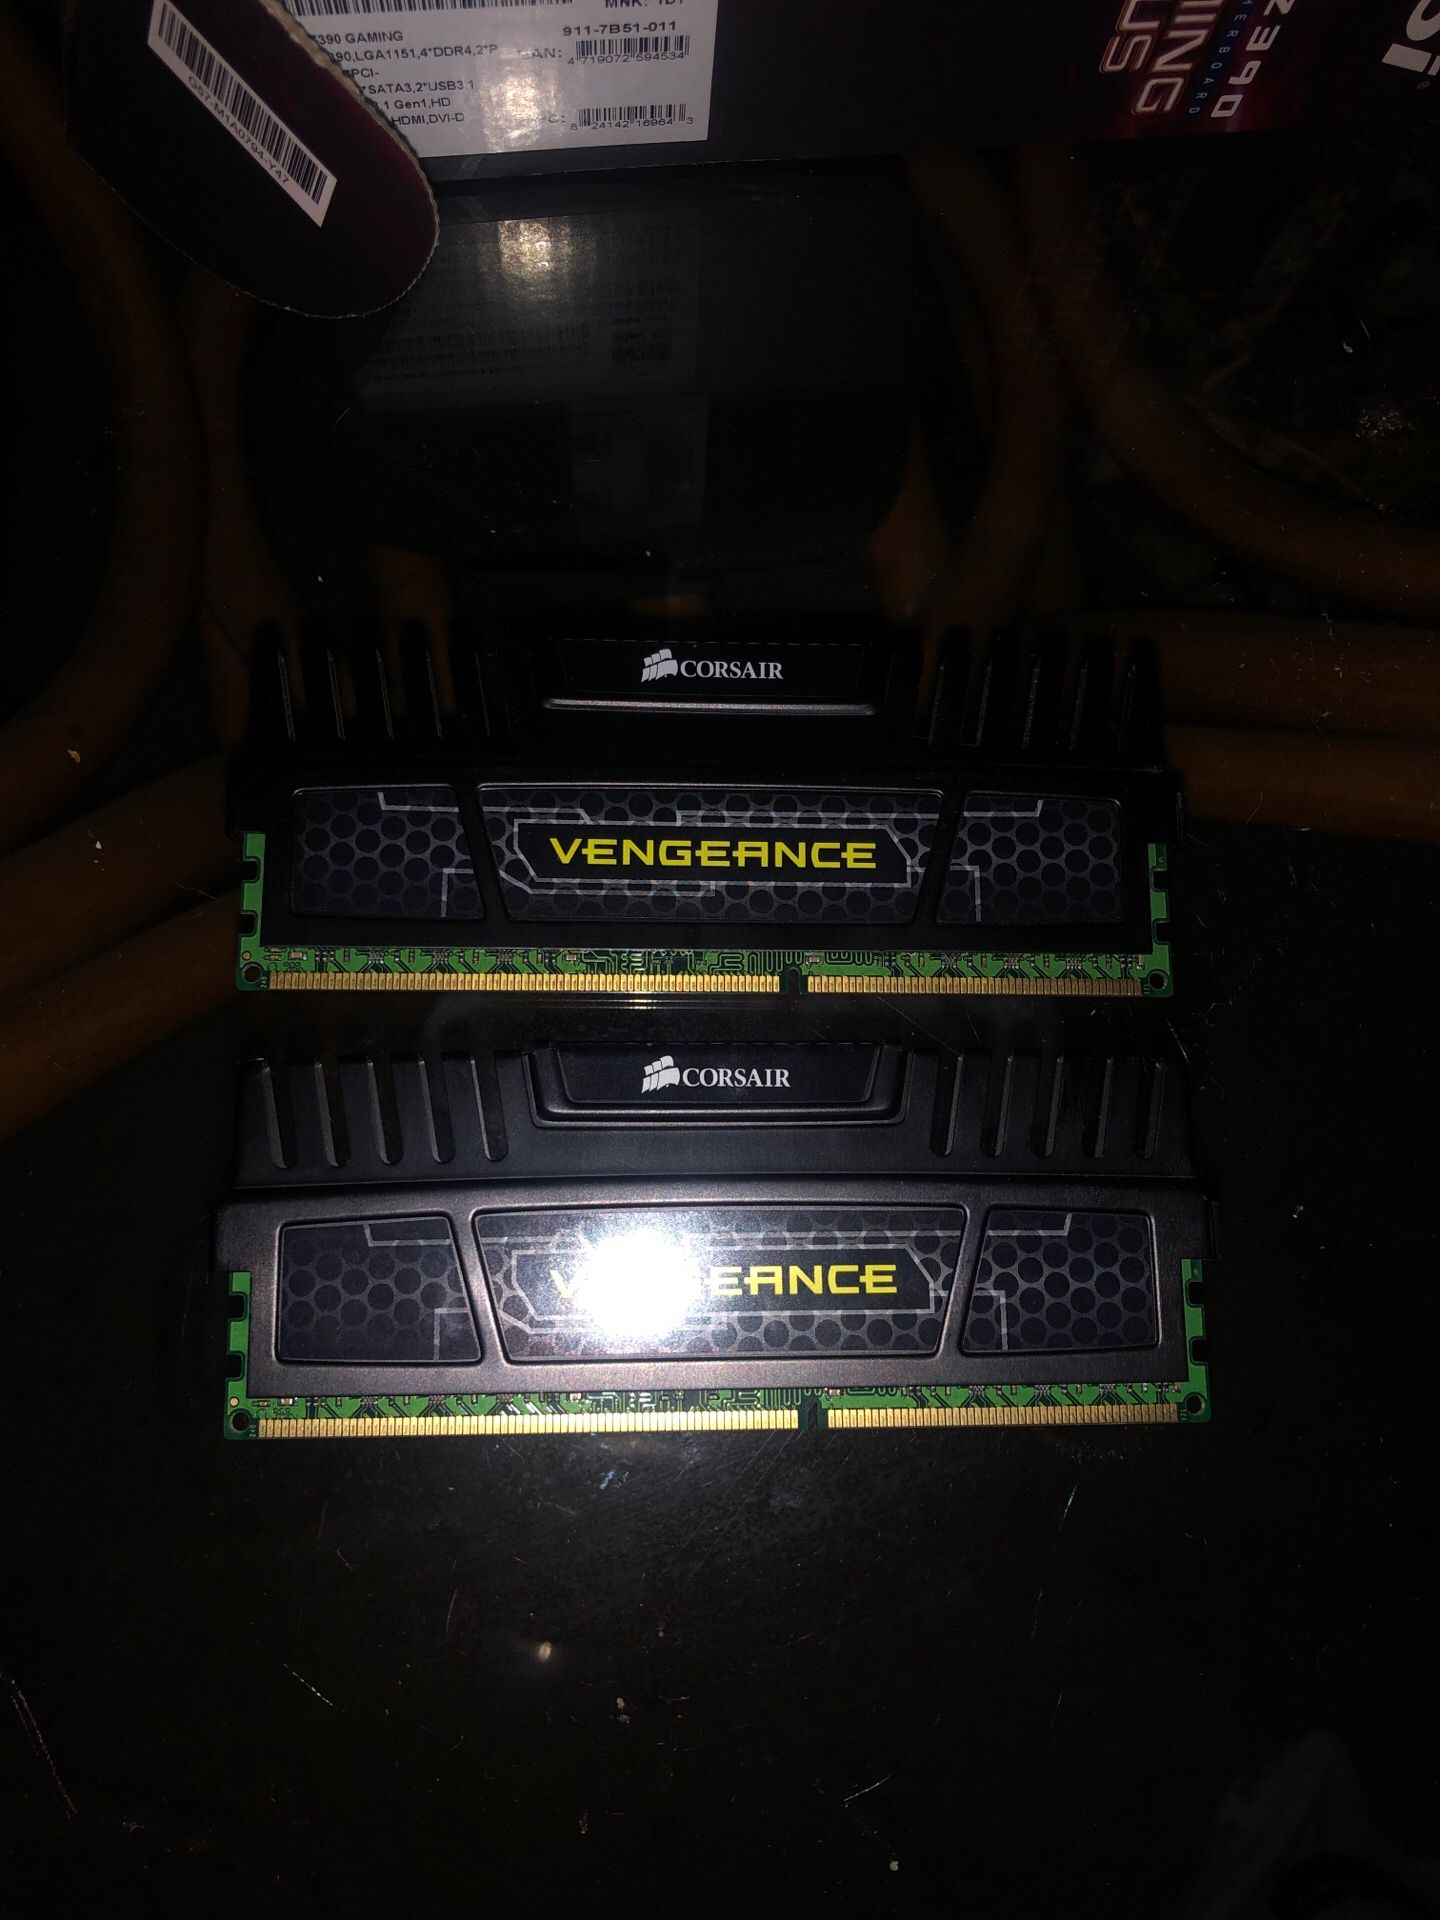 Corsair vengeance DDR3 ram sticks